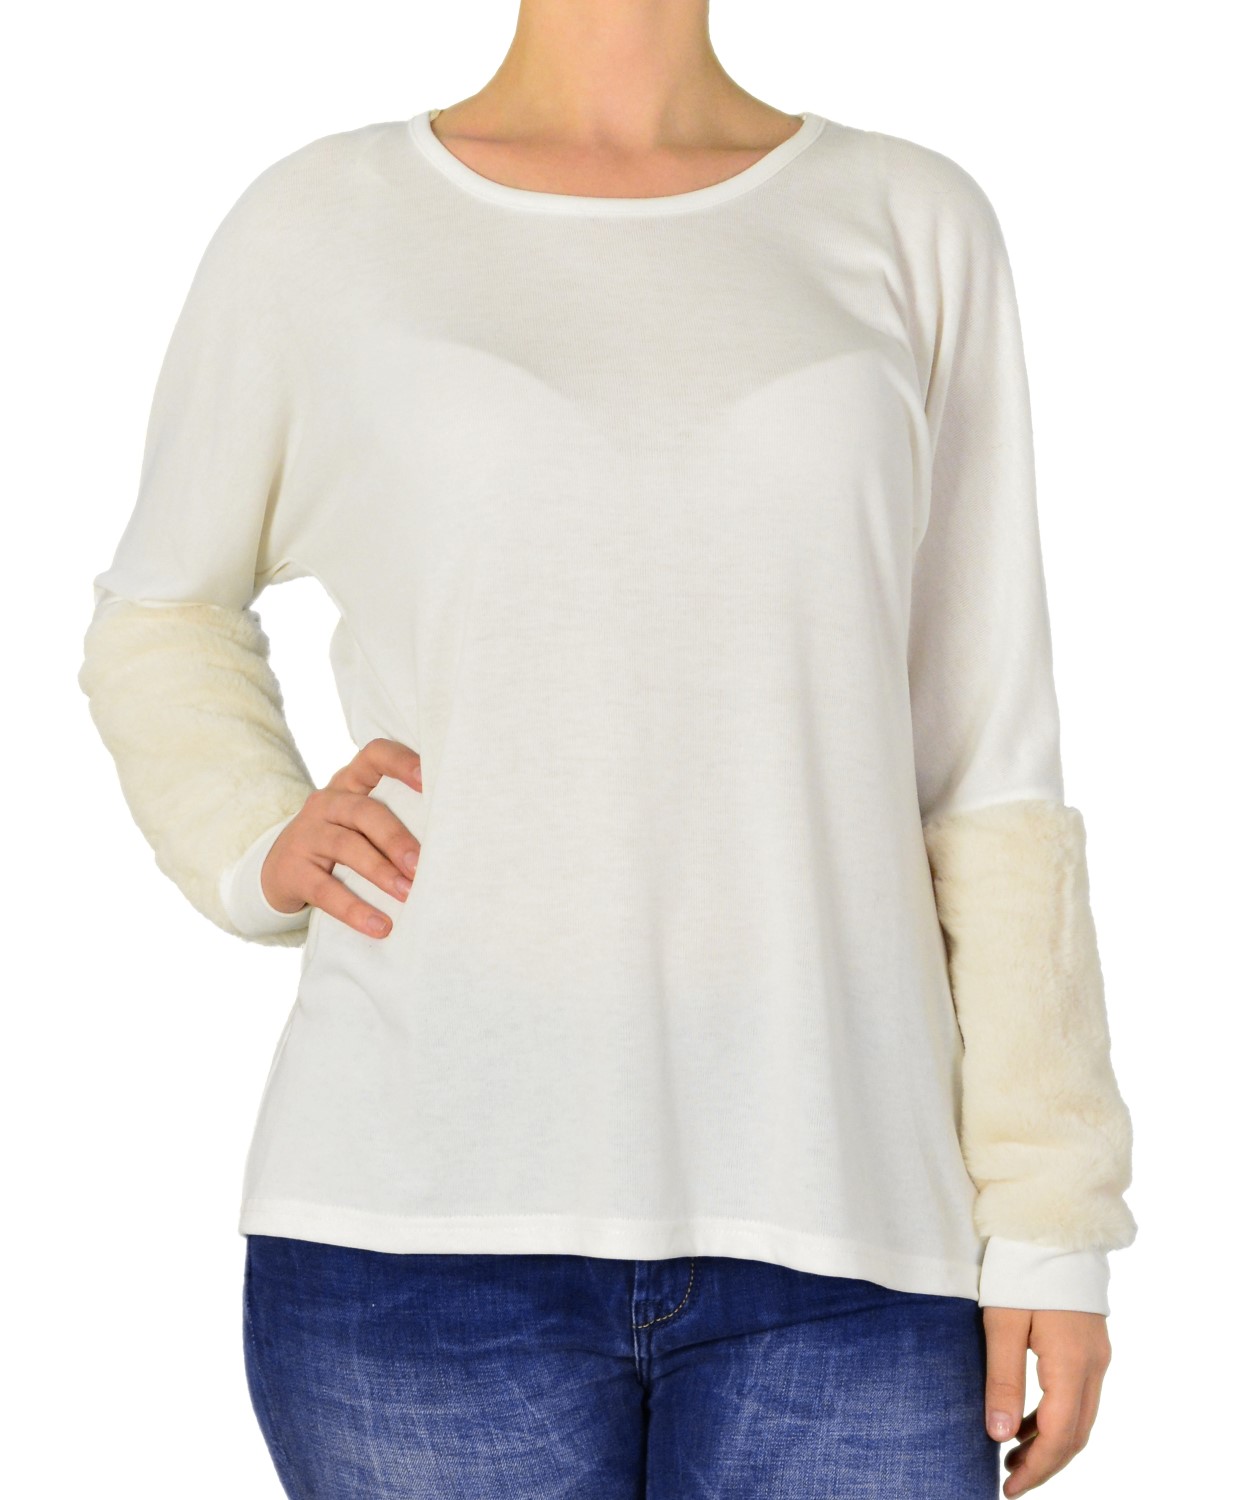 Γυναικεία μακρυμάνικη μπλούζα λευκή με γούνινα μανίκια 2170127F